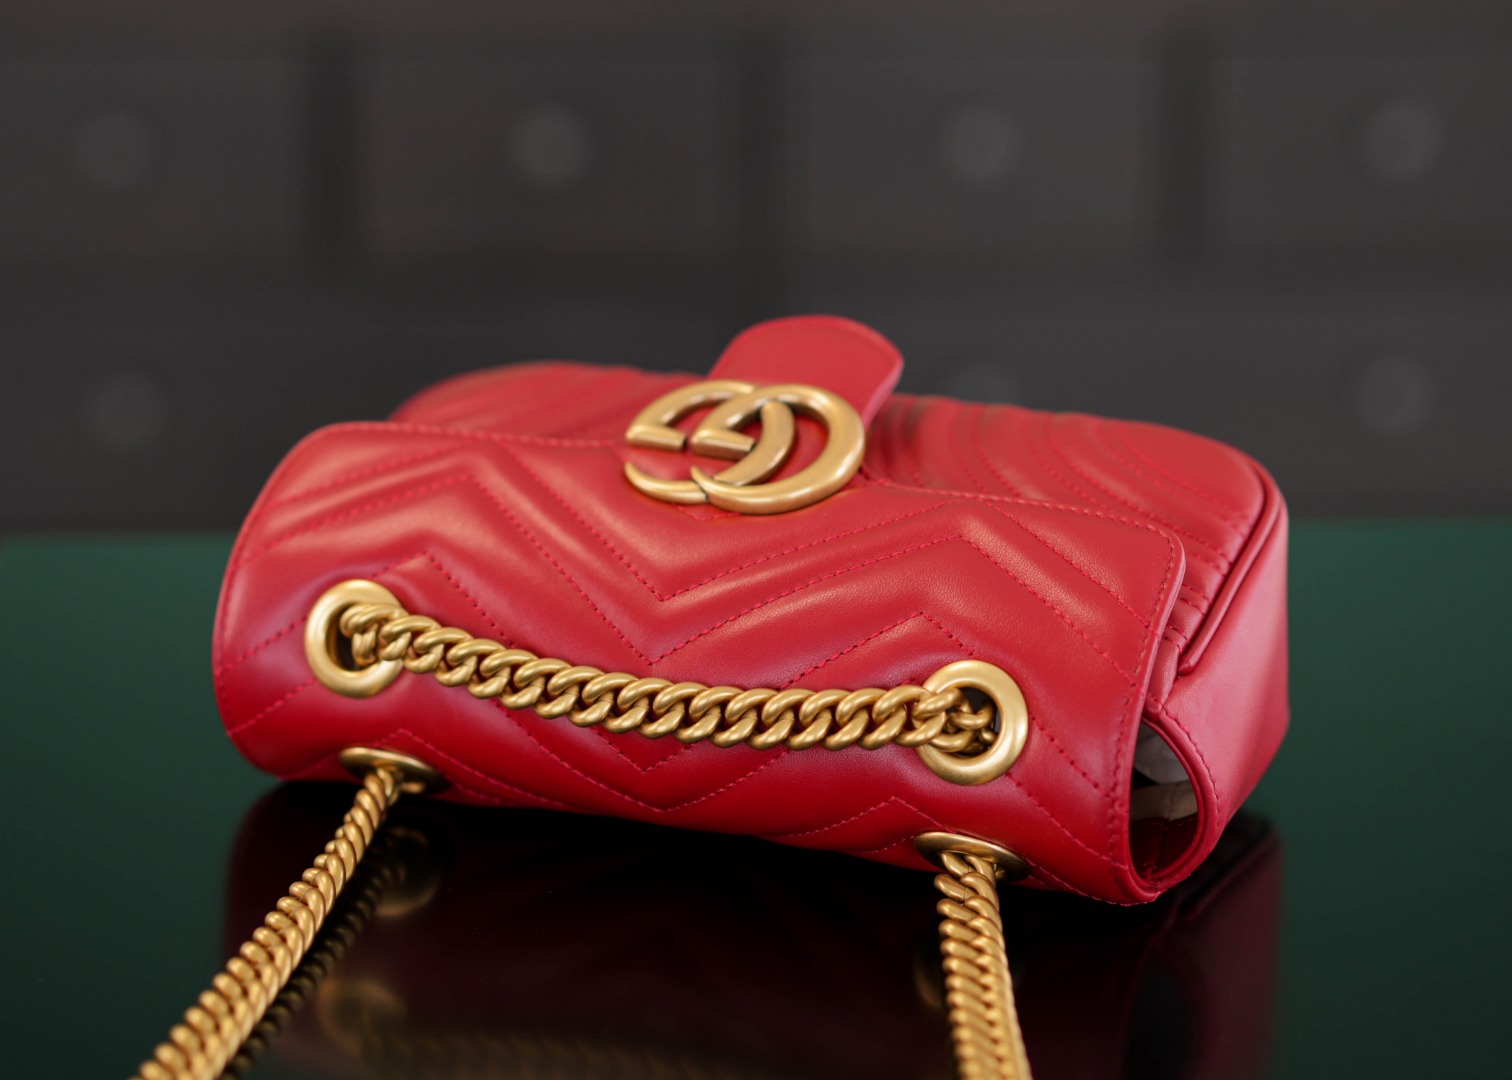 正品级Marmont系列肩背包经典款红色22cm原厂皮全铜五金正品售价18.000独家原厂皮发售限量级别